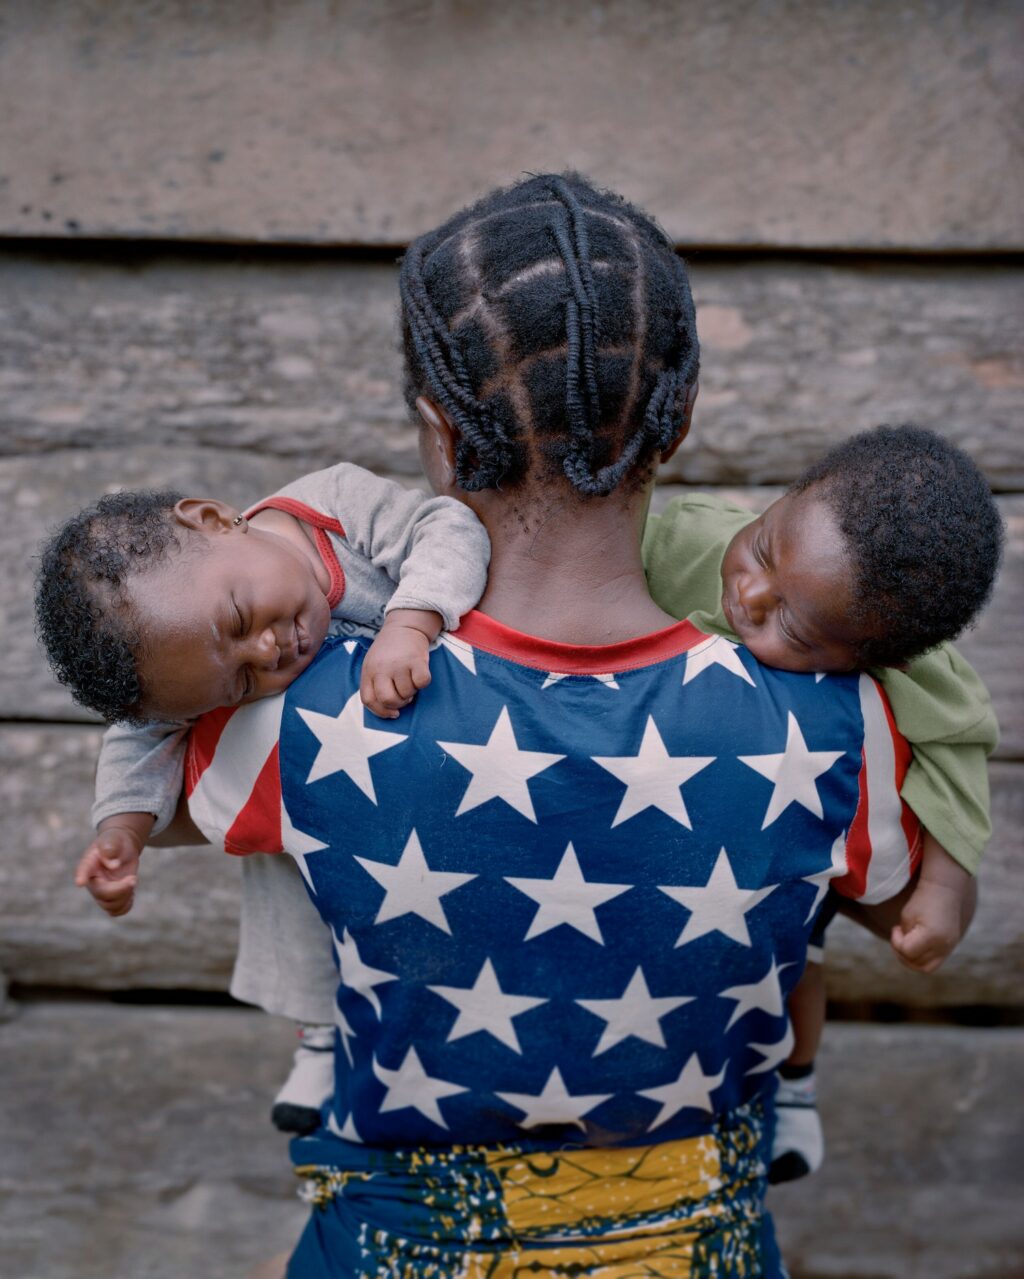 После войны: фоторепортаж из Либерии о том, Либерии, Эллиотт, население, страны, в эту, предвзятых, зрения, с точки, Либерия, должна, какой, представлений, от любых, западноафриканскую, и избавиться, место, первой, а старался, он не фотографировал